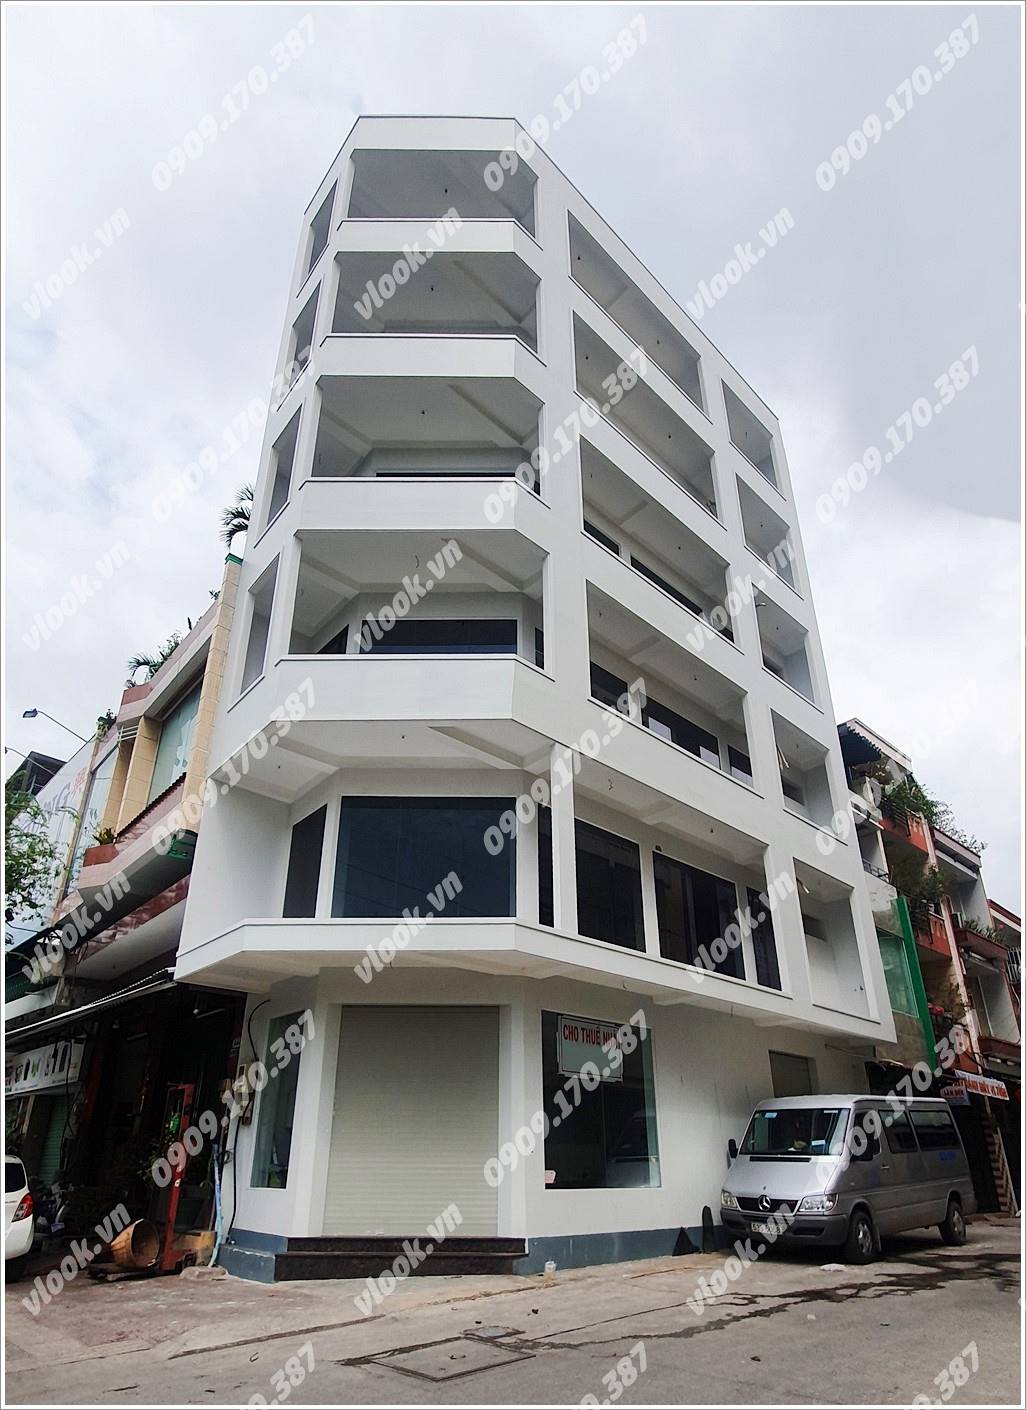 Cao ốc văn phòng cho thuê tòa nhà Hồng Bàng building, Quận 11, Tp.HCM - vlook.vn